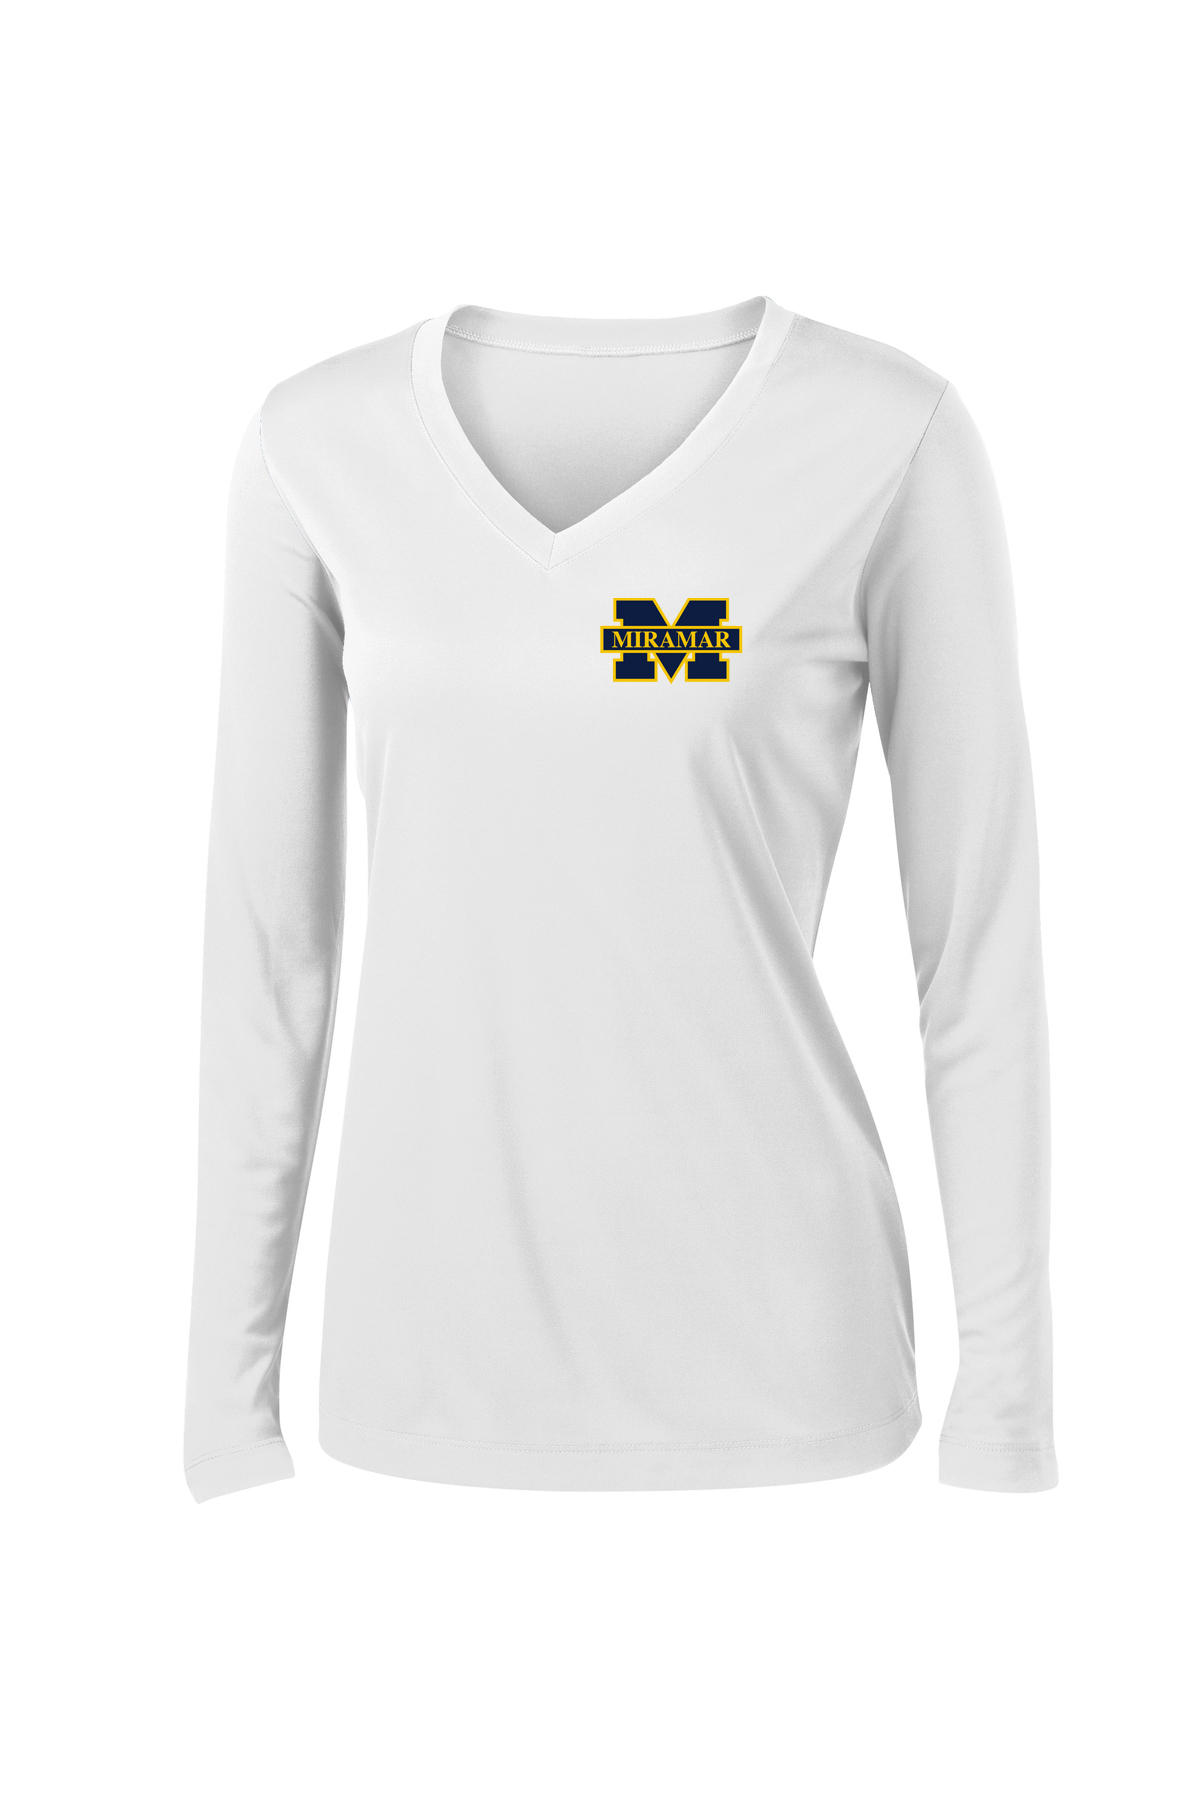 Miramar Wolverines Football Women's Long Sleeve Performance Shirt